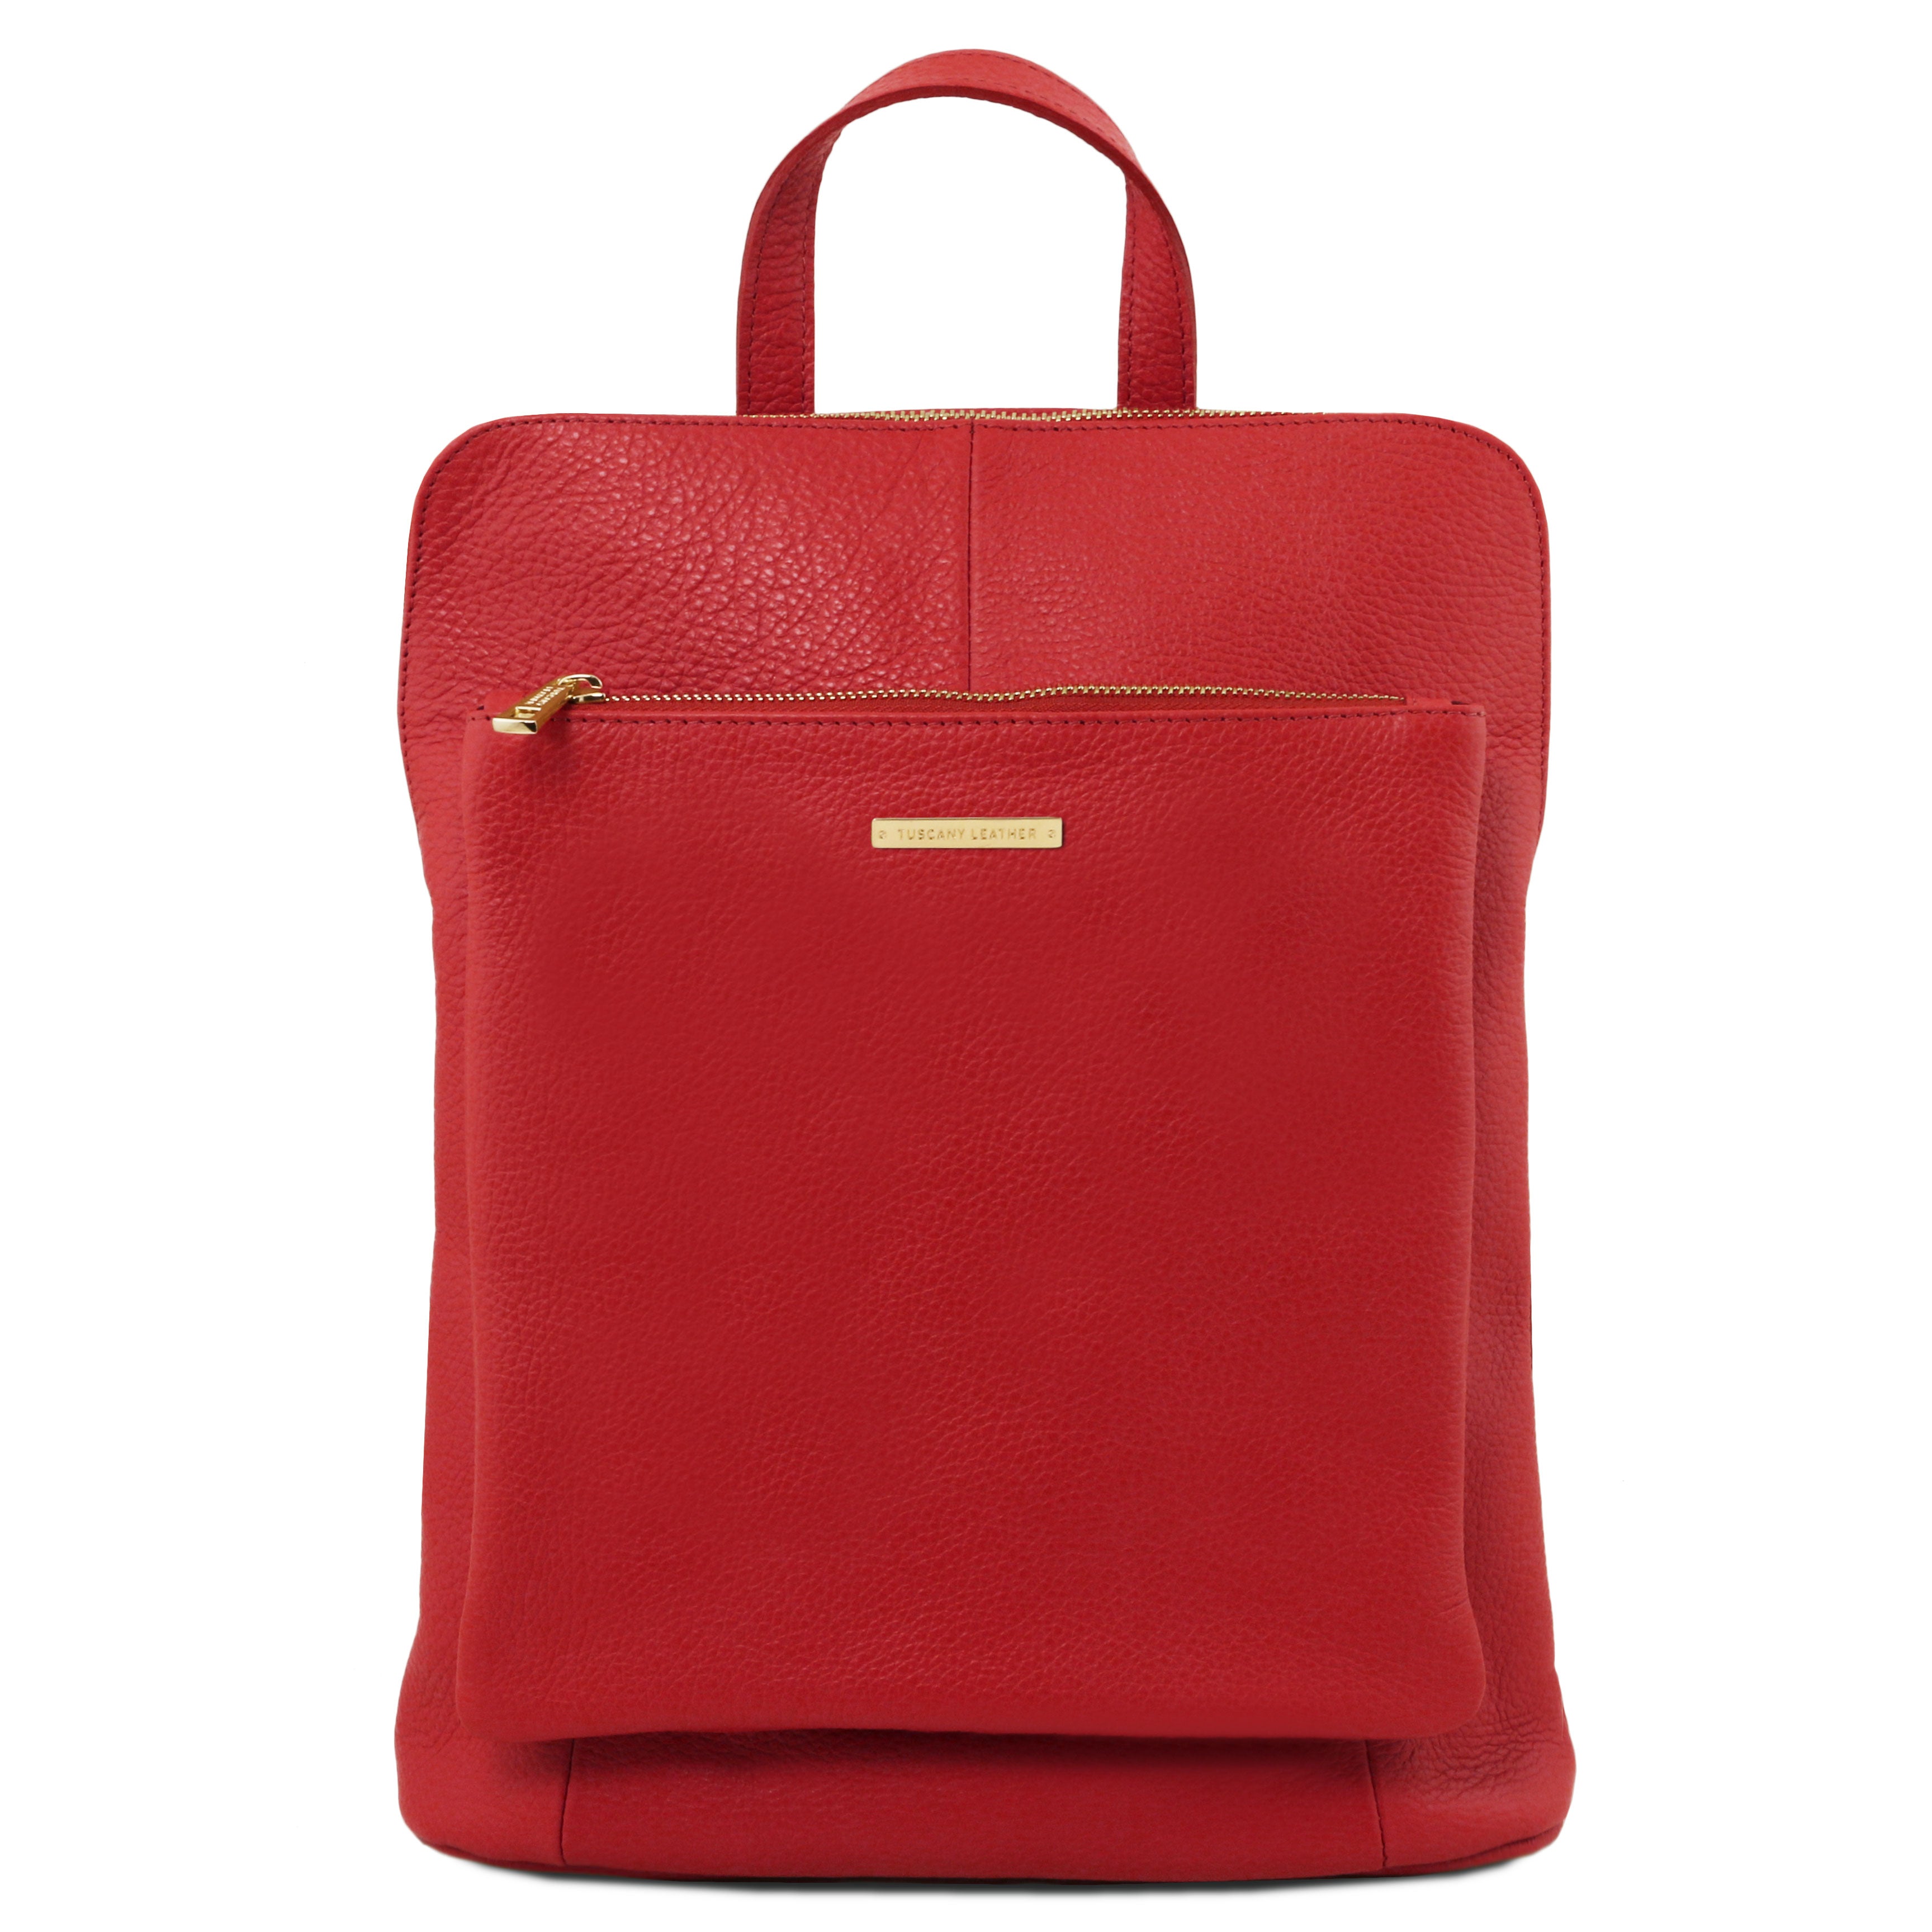 Tuscany Leather rugtas leer TL Bag TL141682 rood